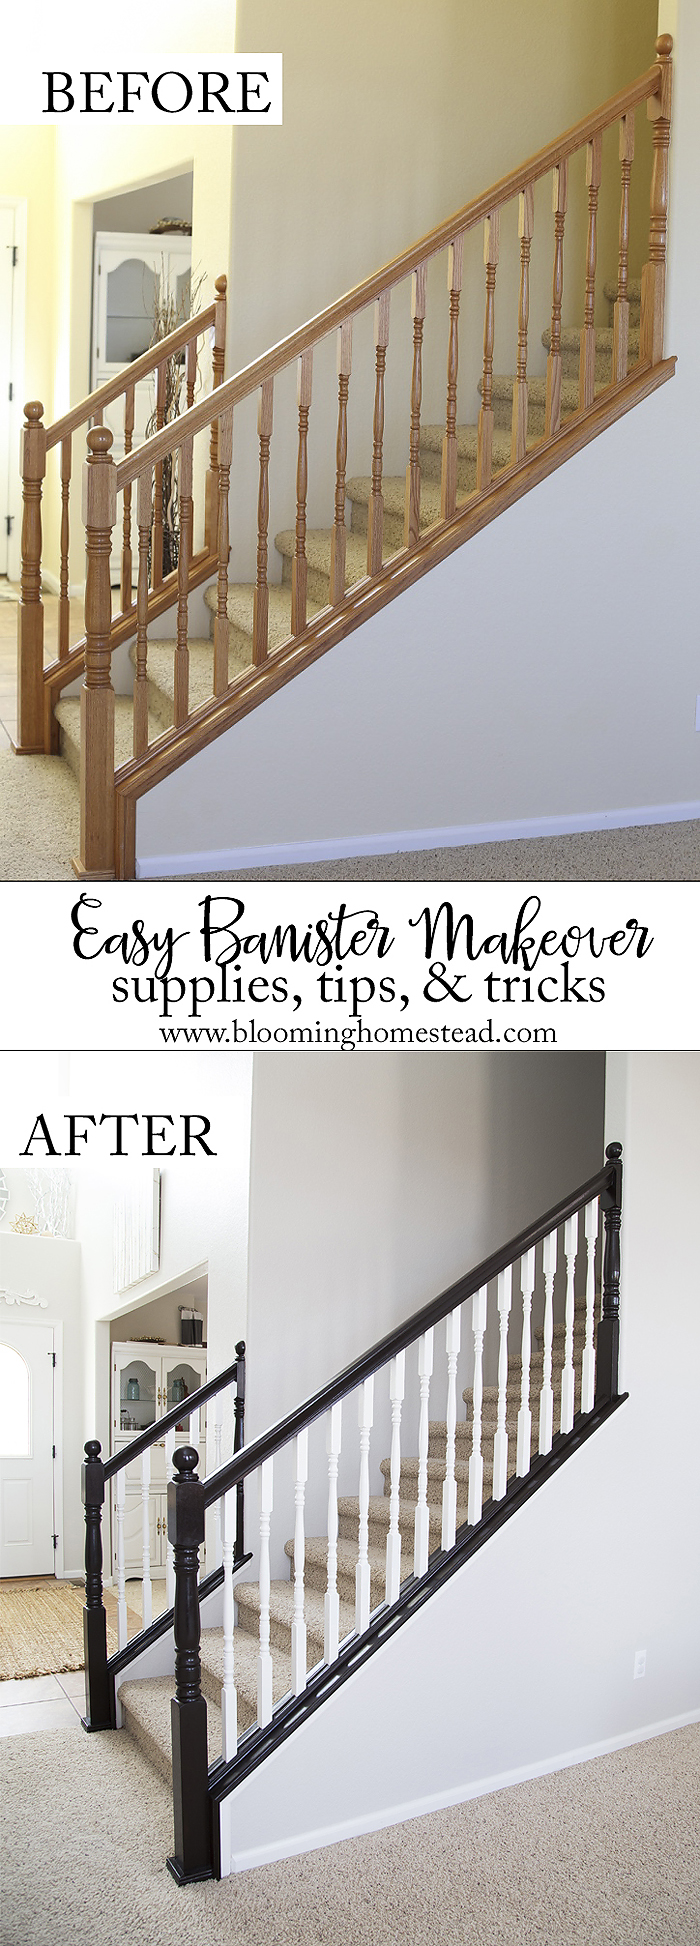 stair makeover railing diy staircase bloominghomestead easy stairs banister wood indoor railings